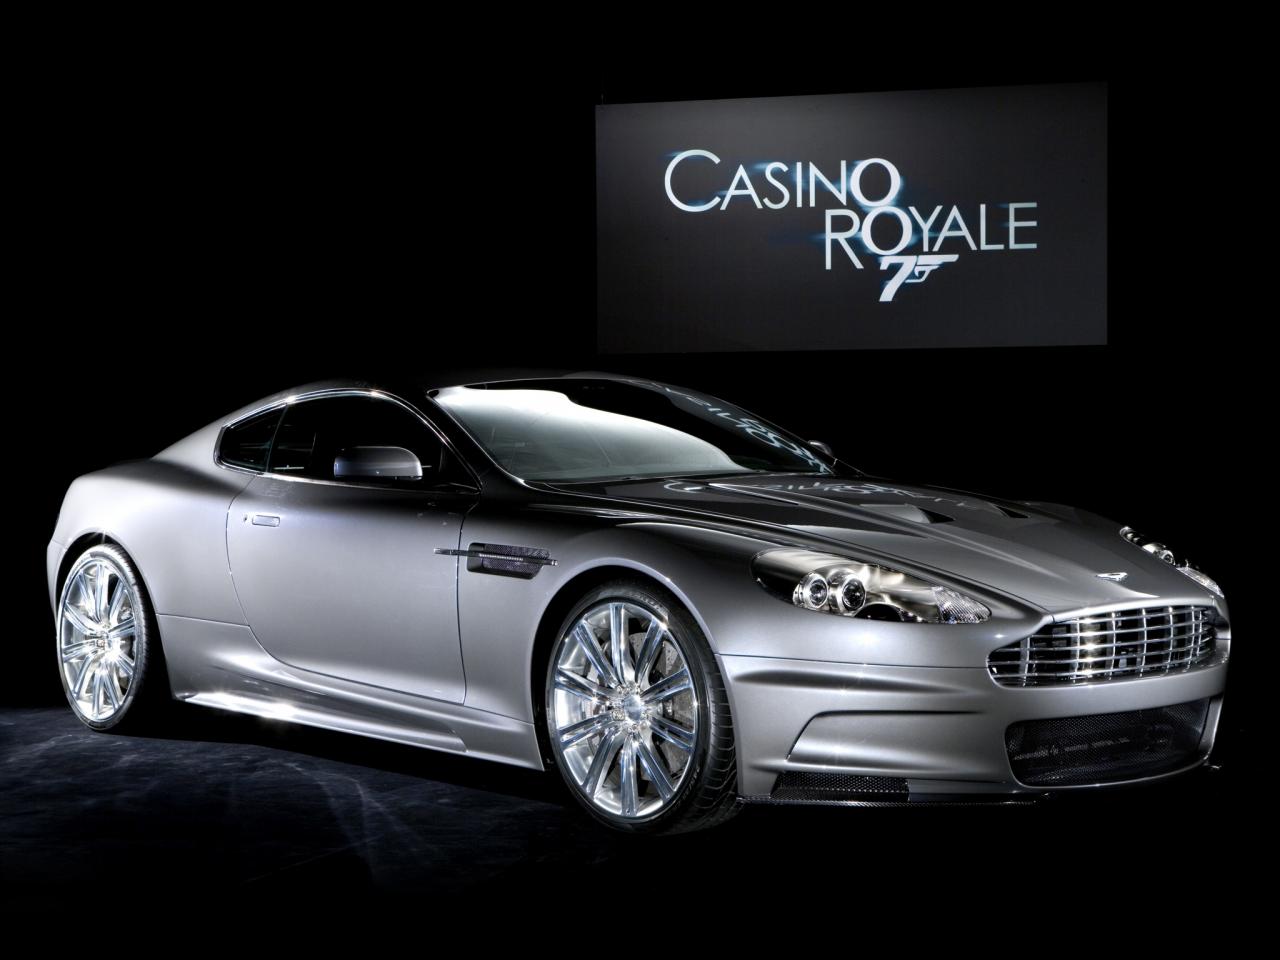 обои Aston Martin DBS 007 Casino Royale 2006 бок фото